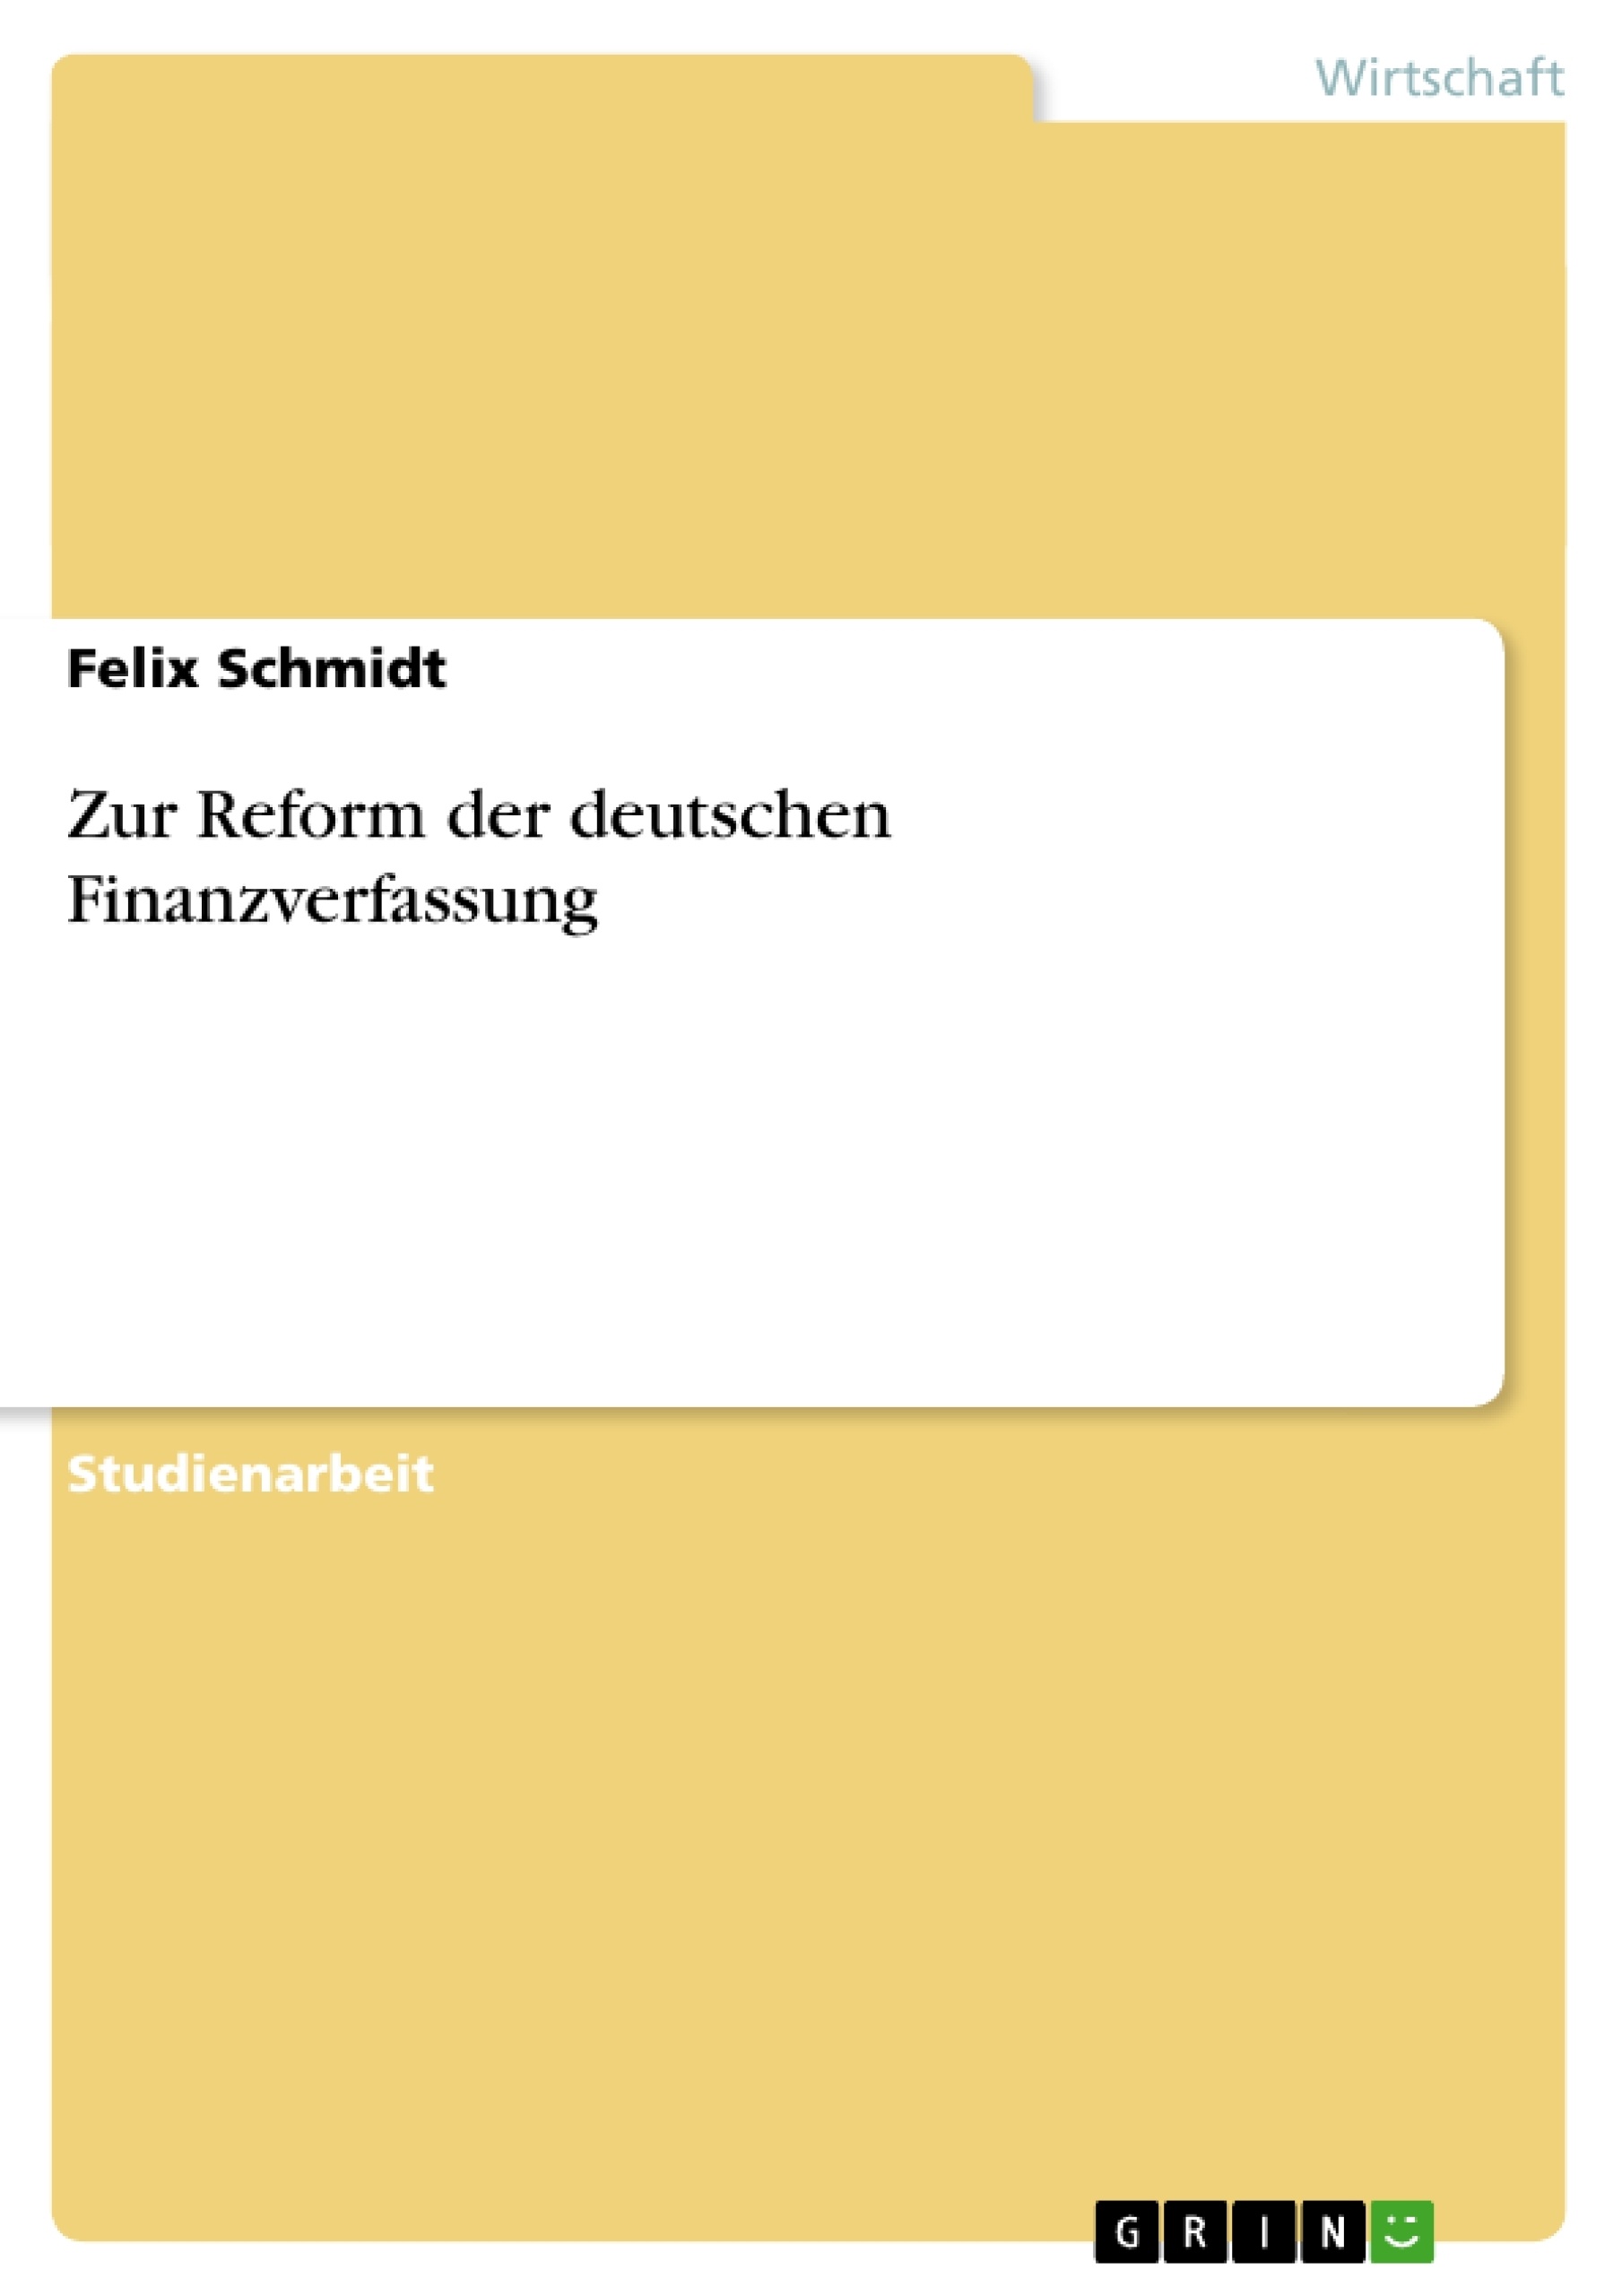 Título: Zur Reform der deutschen Finanzverfassung